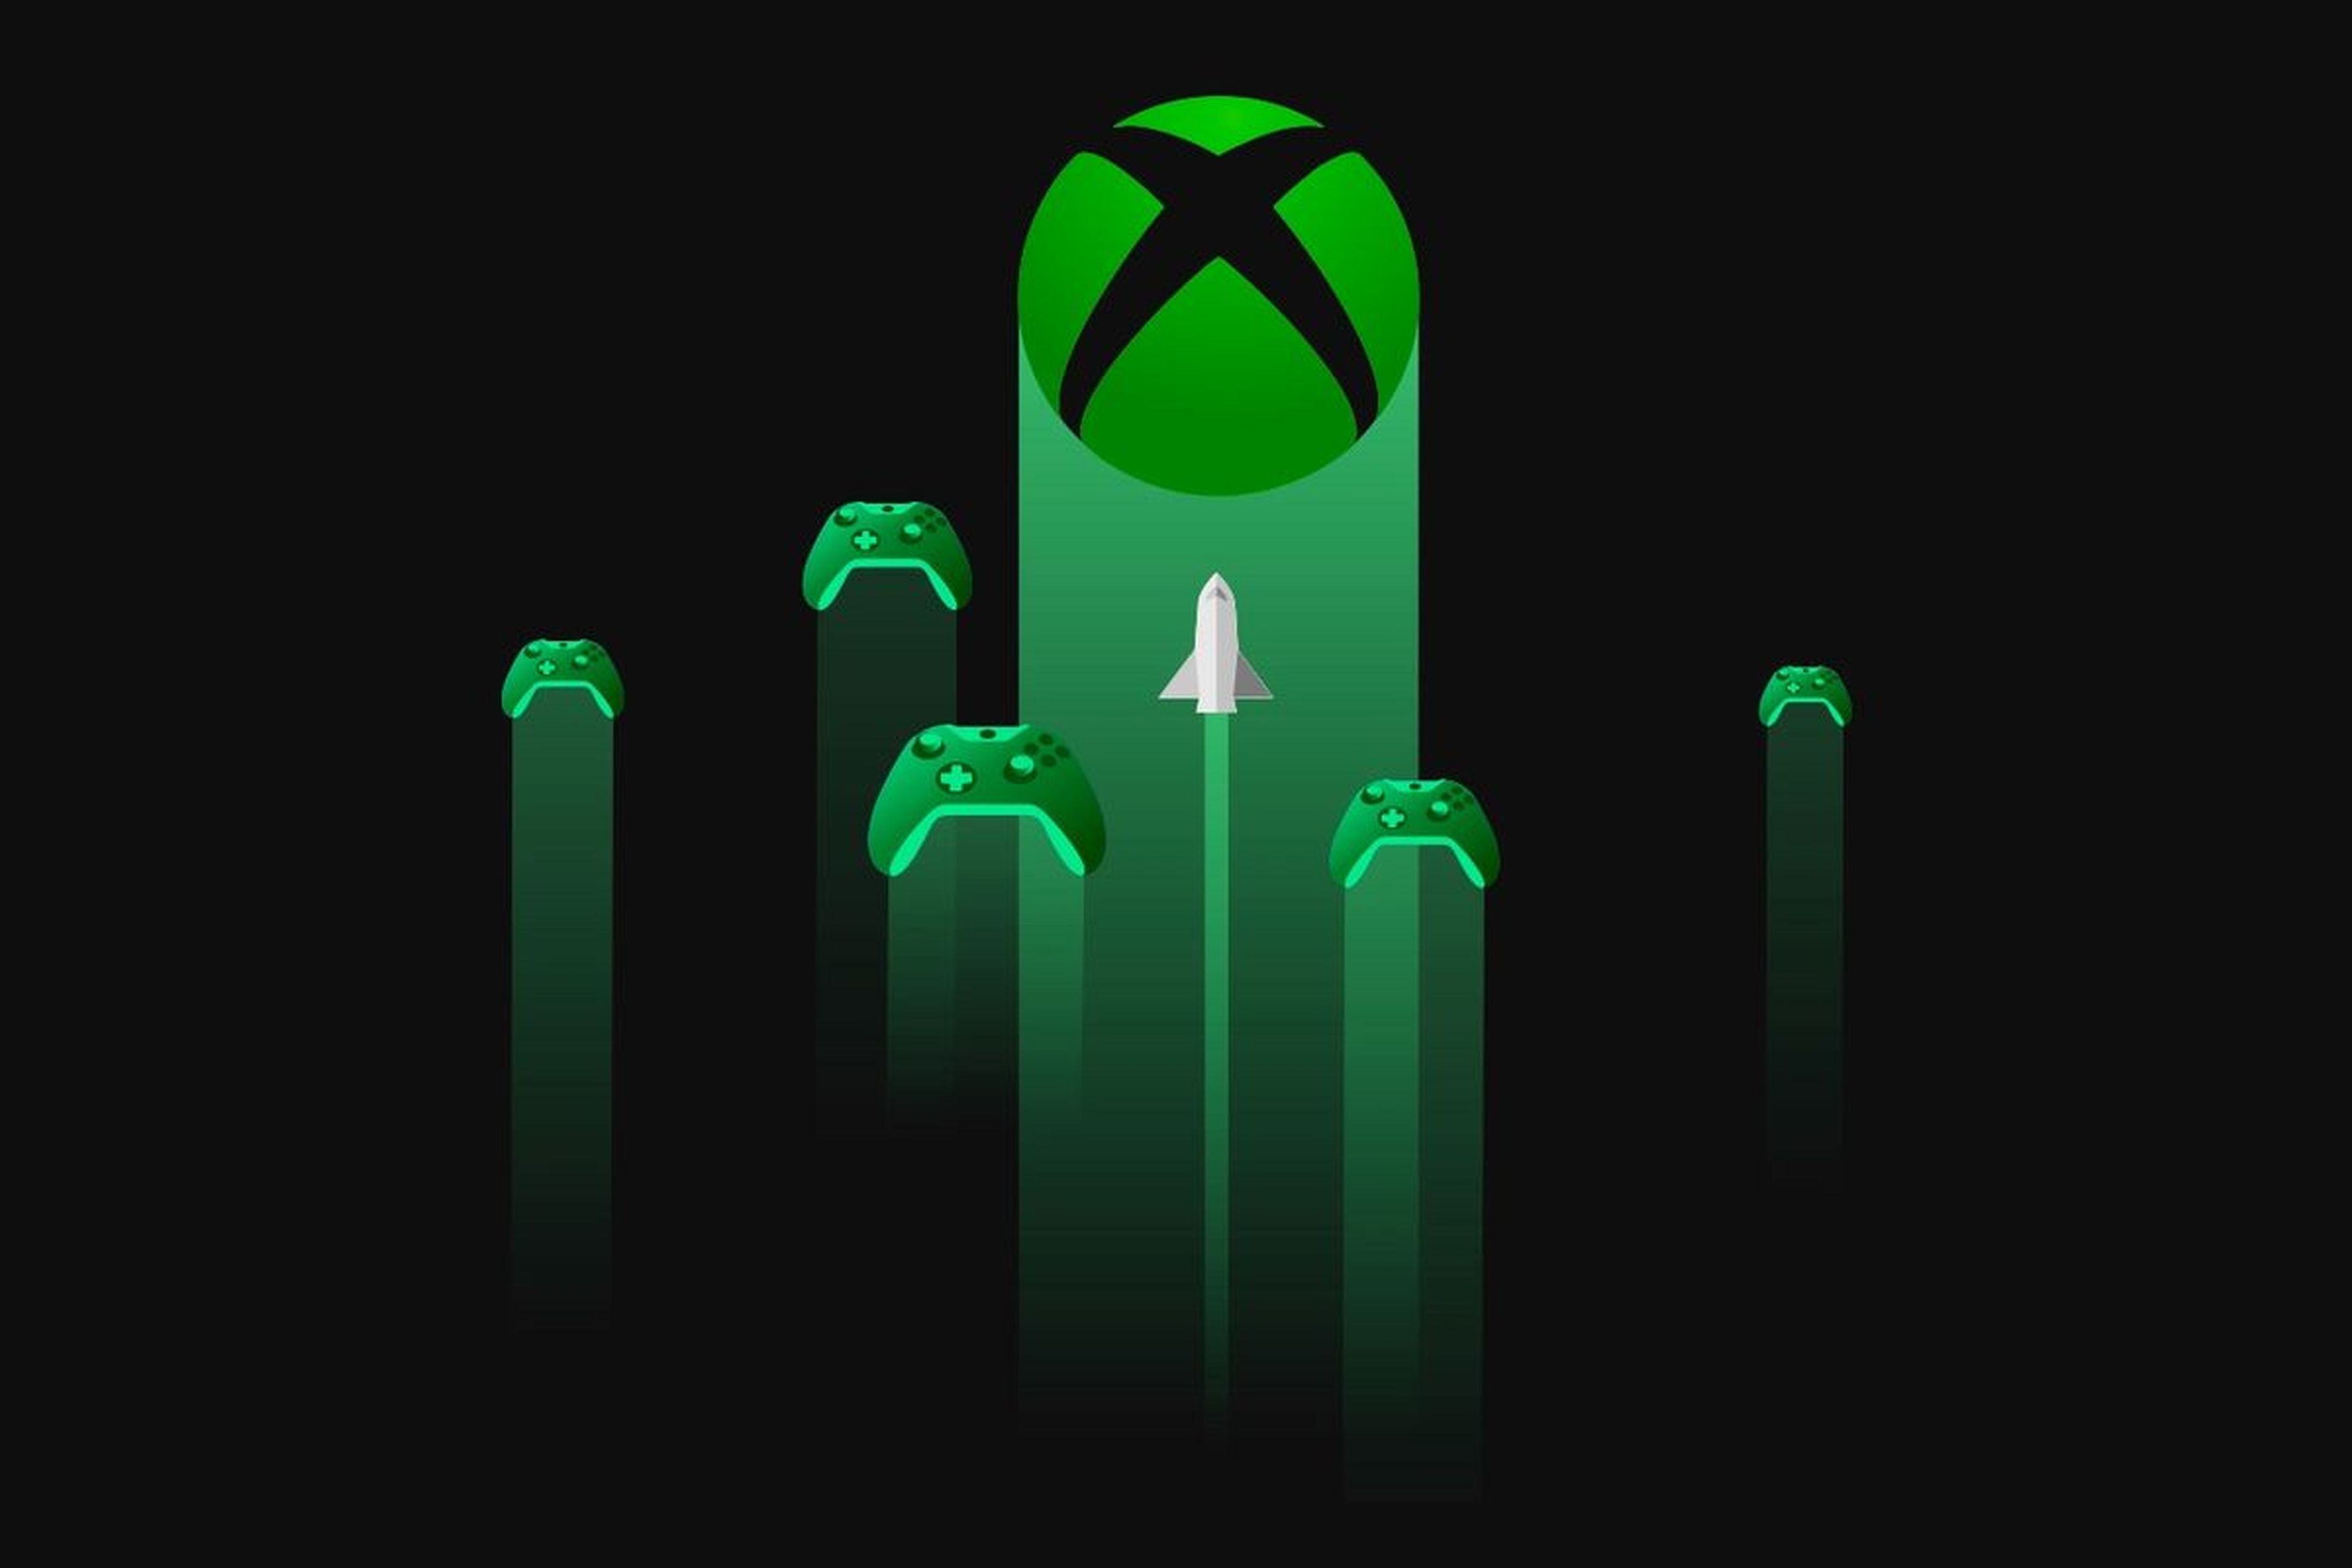 Epic explica por que não coloca Fortnite no Xbox Cloud Gaming